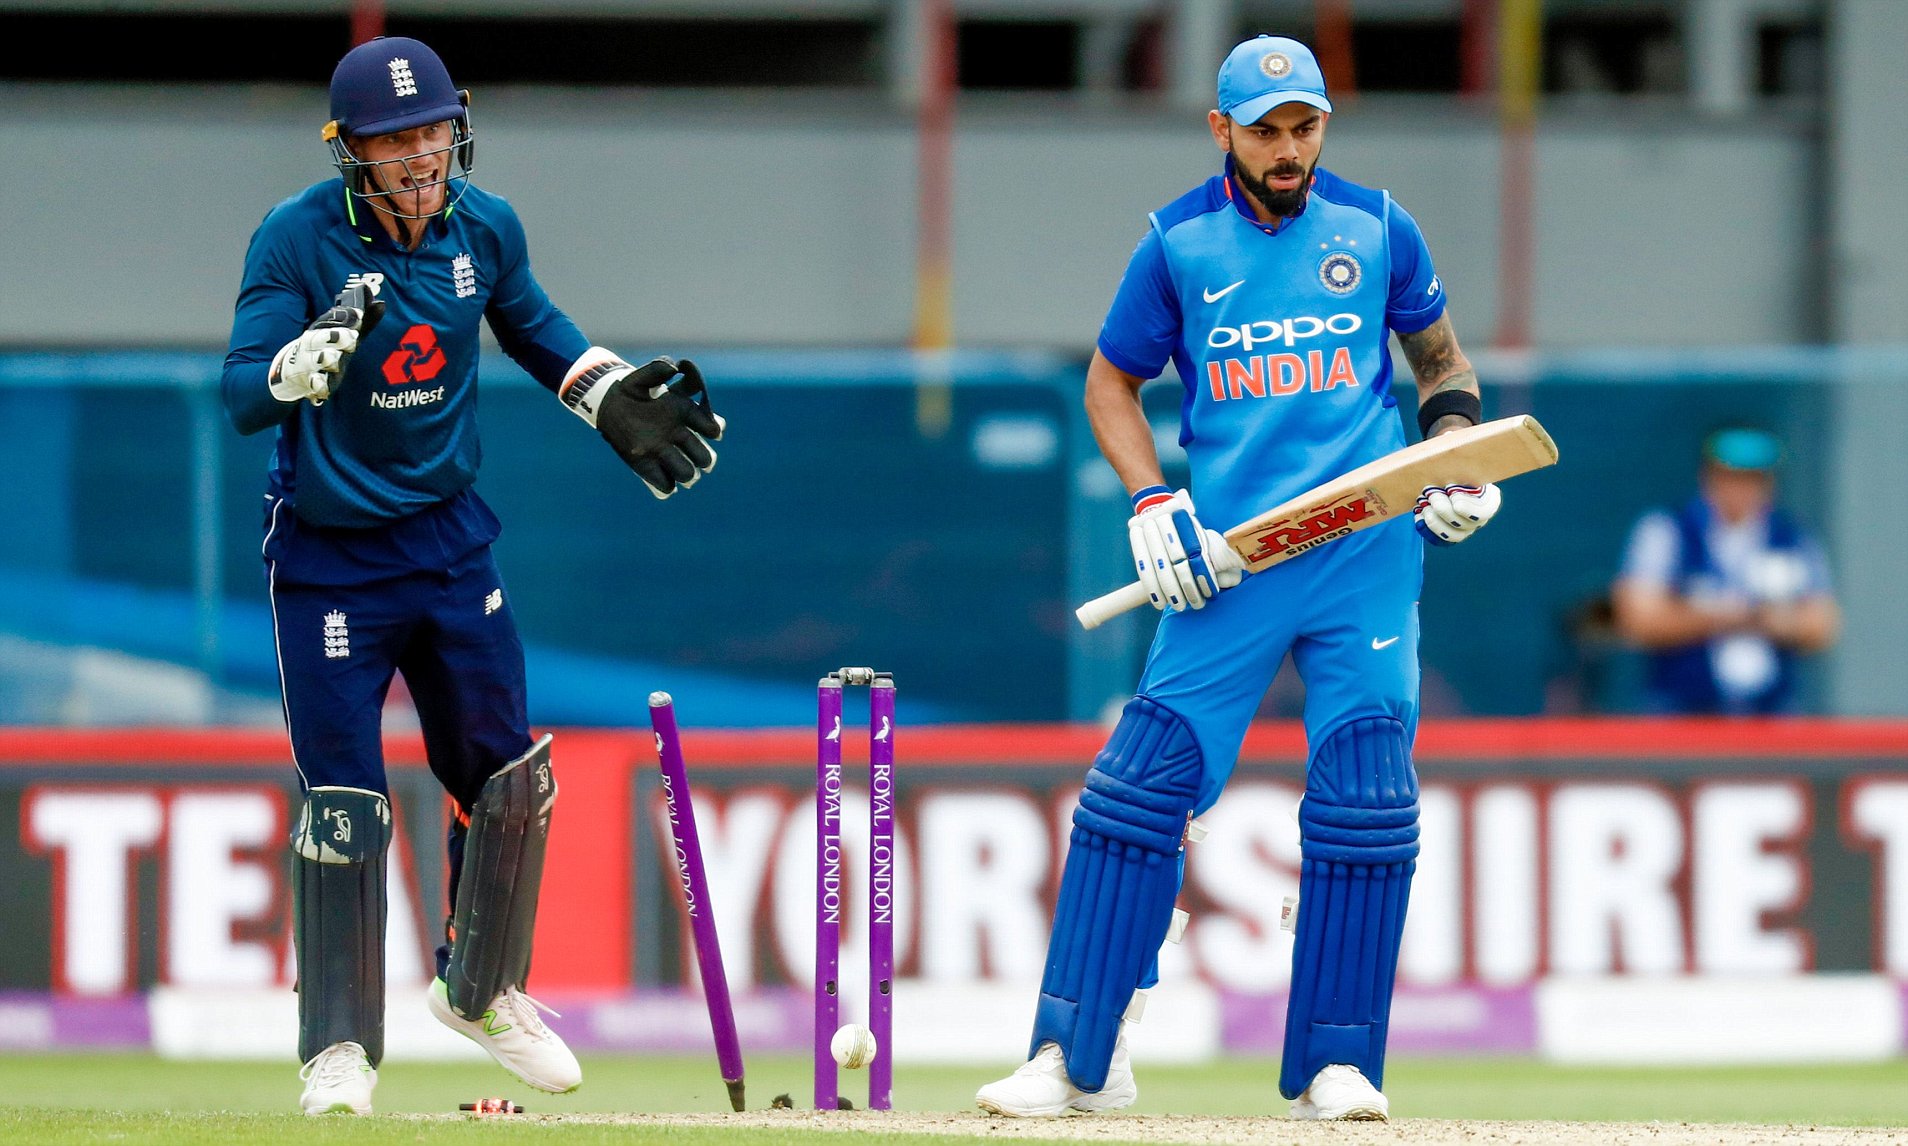 Adil Rashid to Virat Kohli in 3rd ODI at Leed in 2018